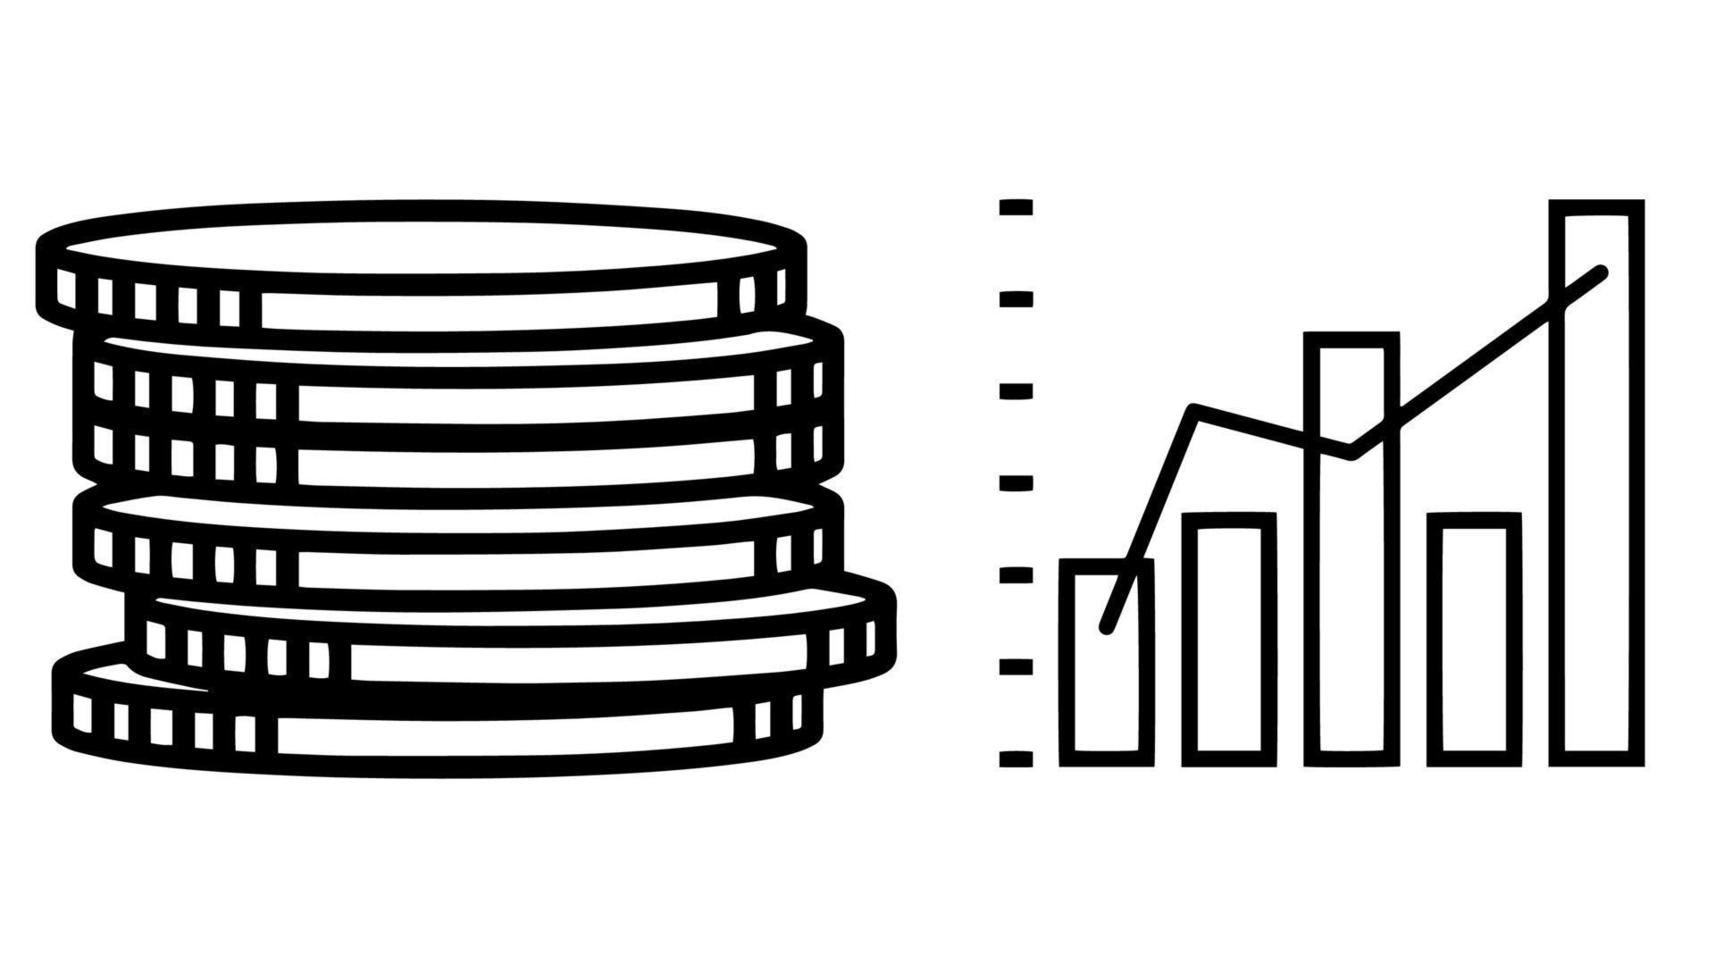 icono gráfico y monedas sobre fondo blanco. concepto de ilustración de finanzas empresariales. vector